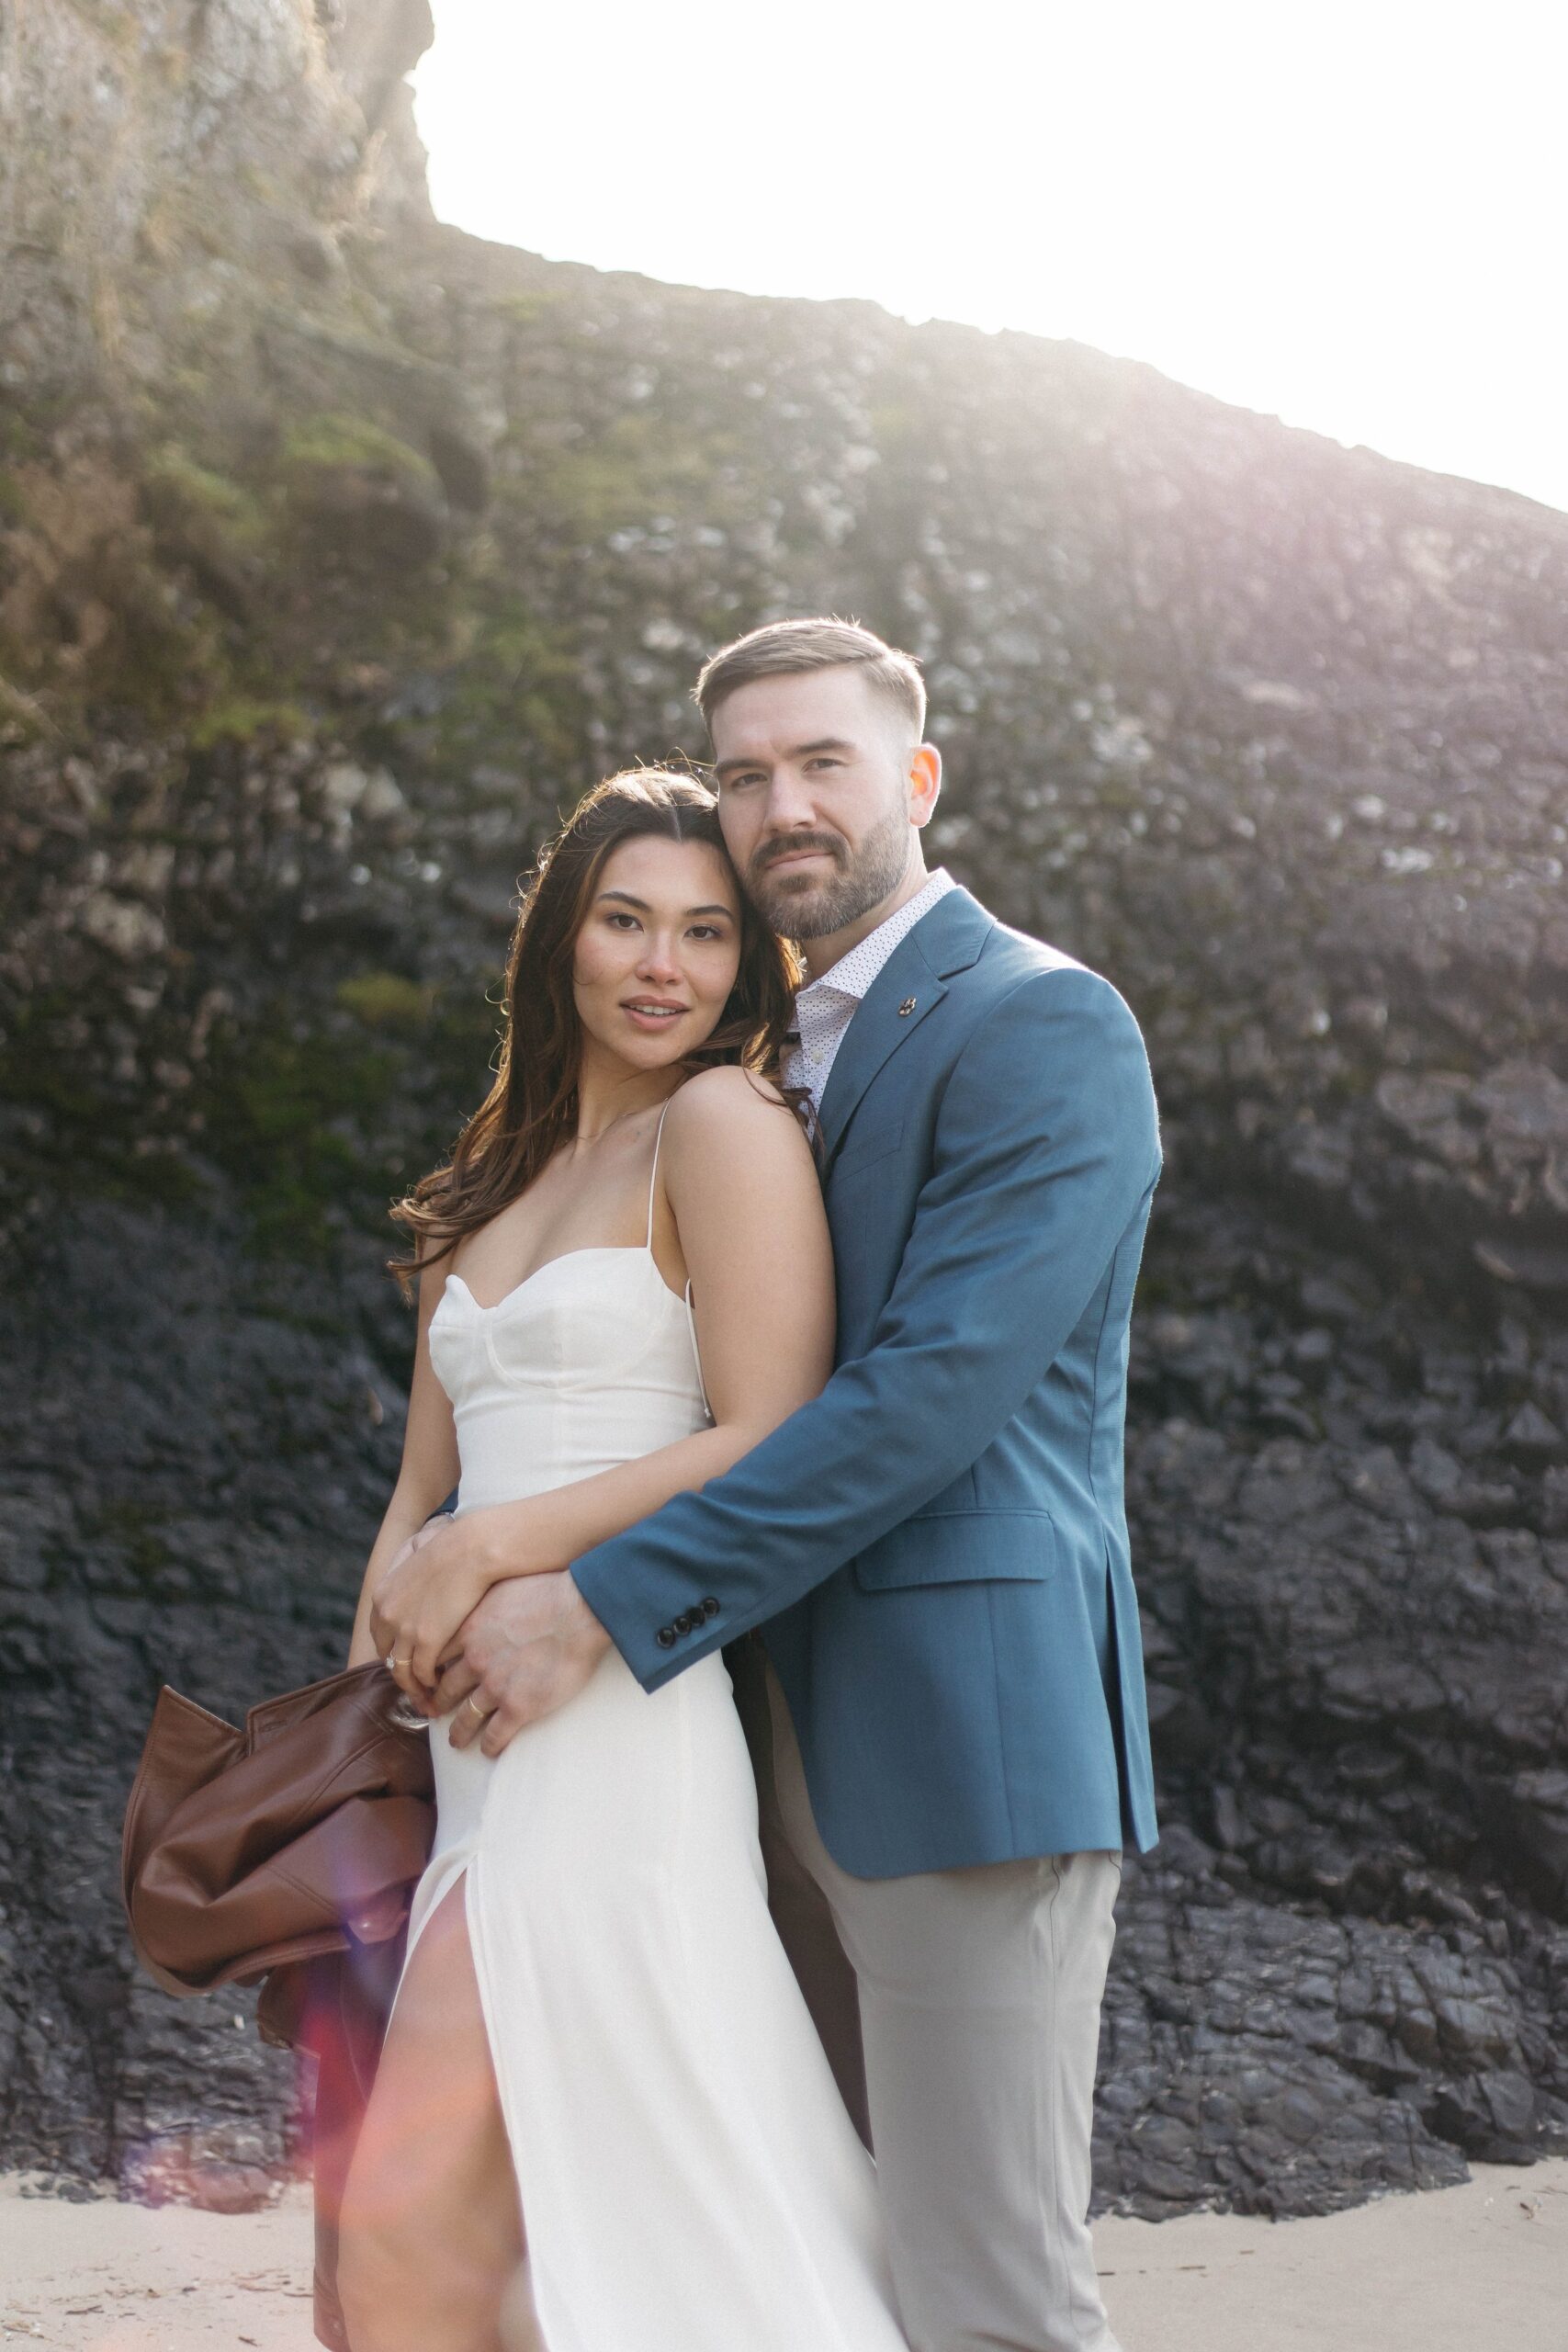  Oregon coast elopement, film photography, arch cape, candids, couple portraits 